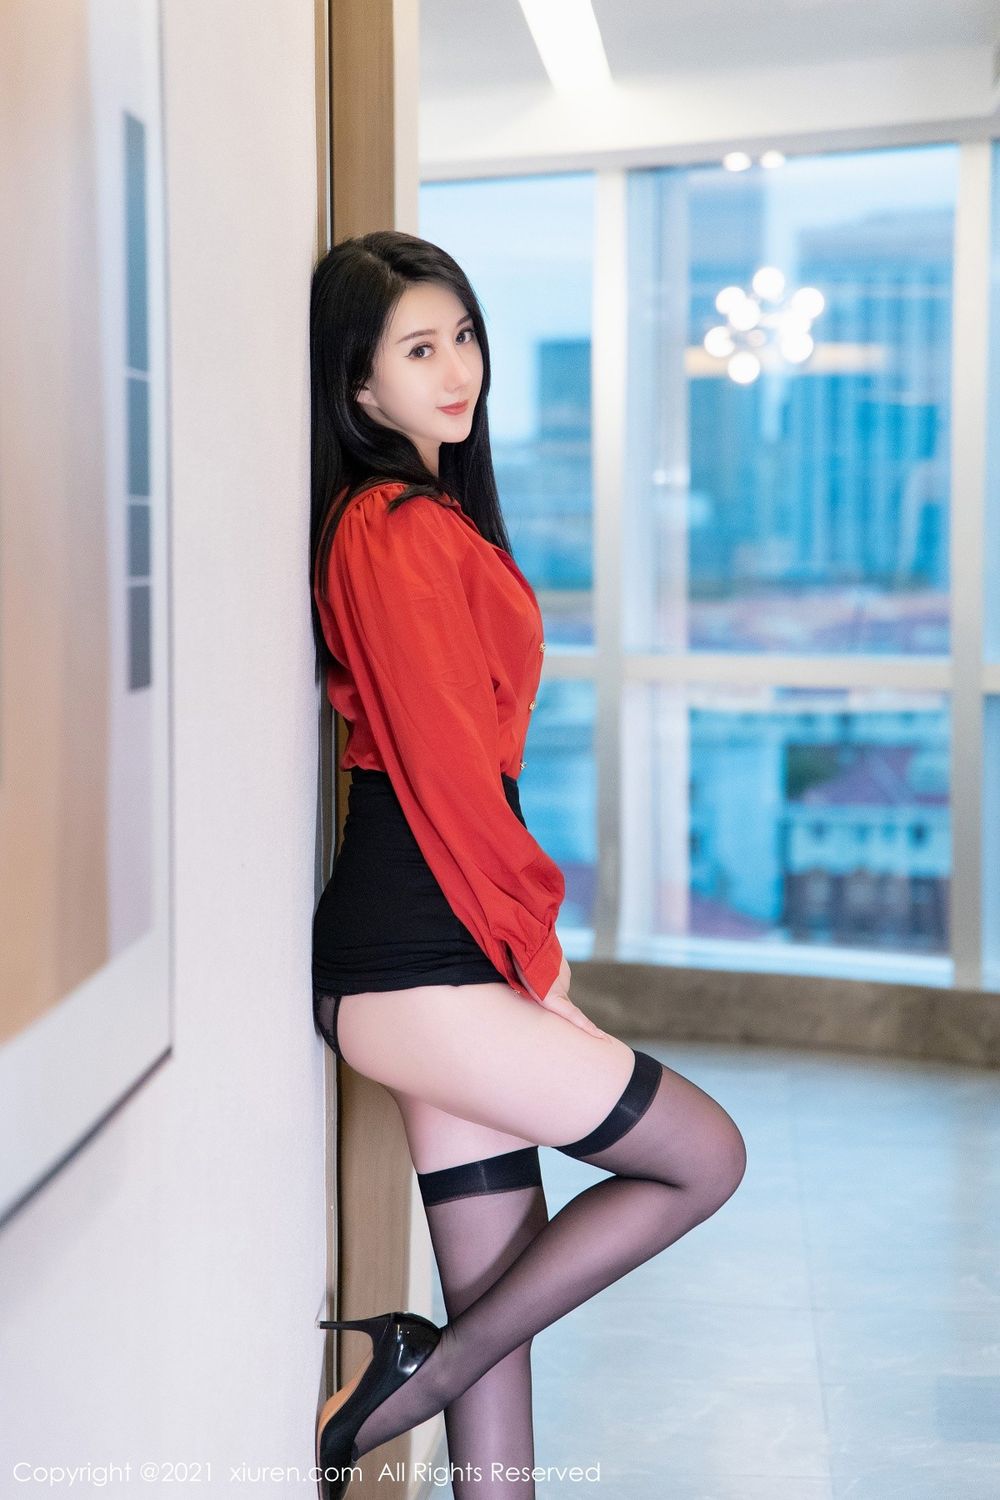 美女模特苏小曼babyface猩红衬衫黑丝OL系列性感写真